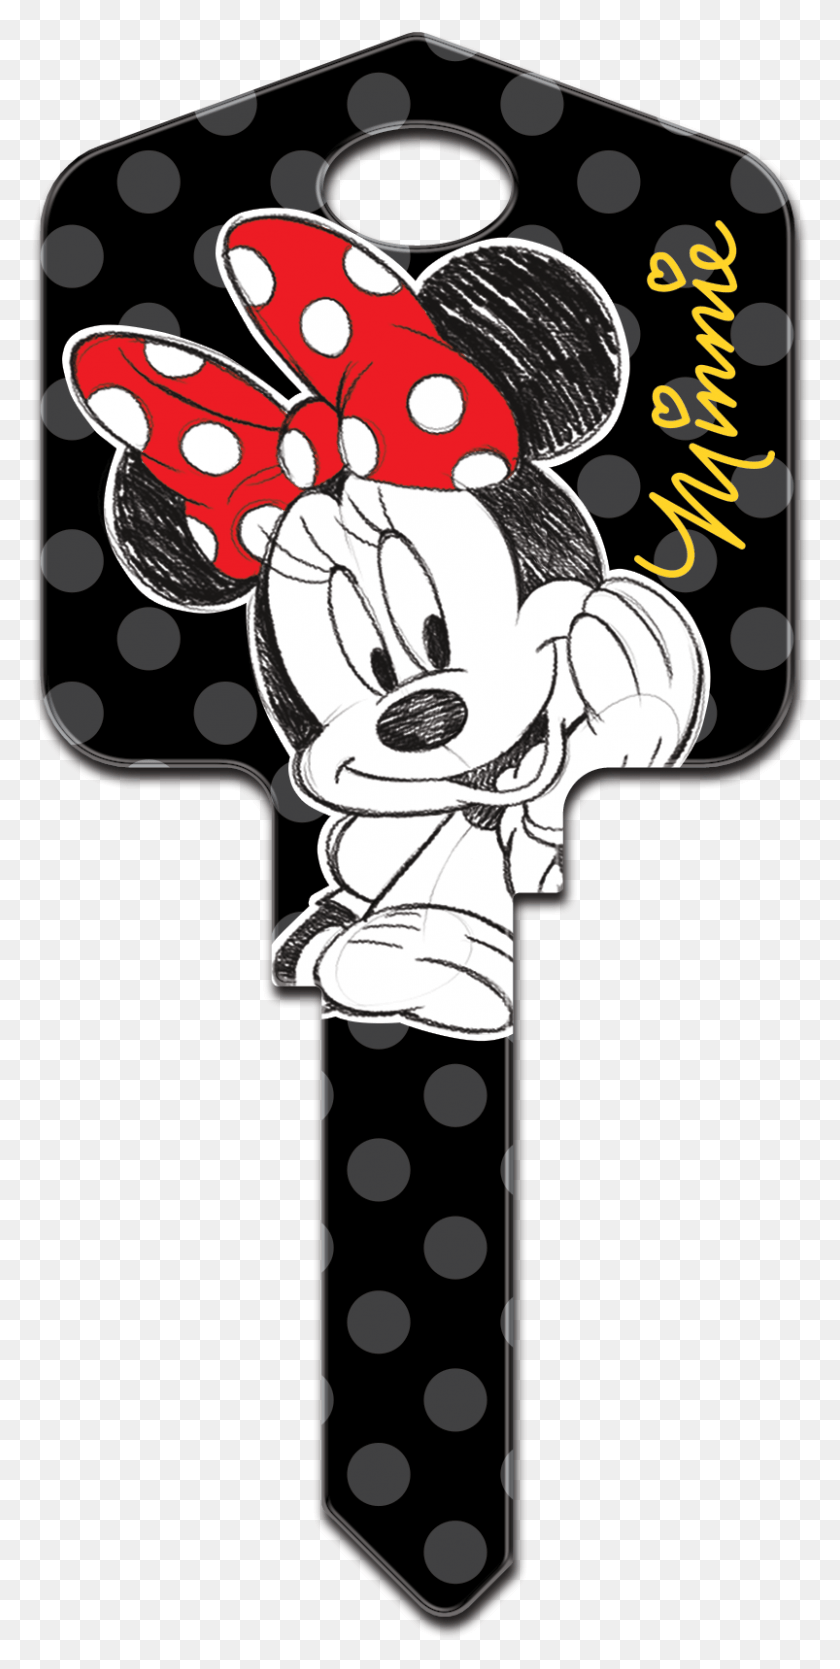 803x1657 Descargar Png Minnie Mouse D83 Llaves De La Casa De Minnie Mouse, Cruz, Símbolo, Gráficos Hd Png